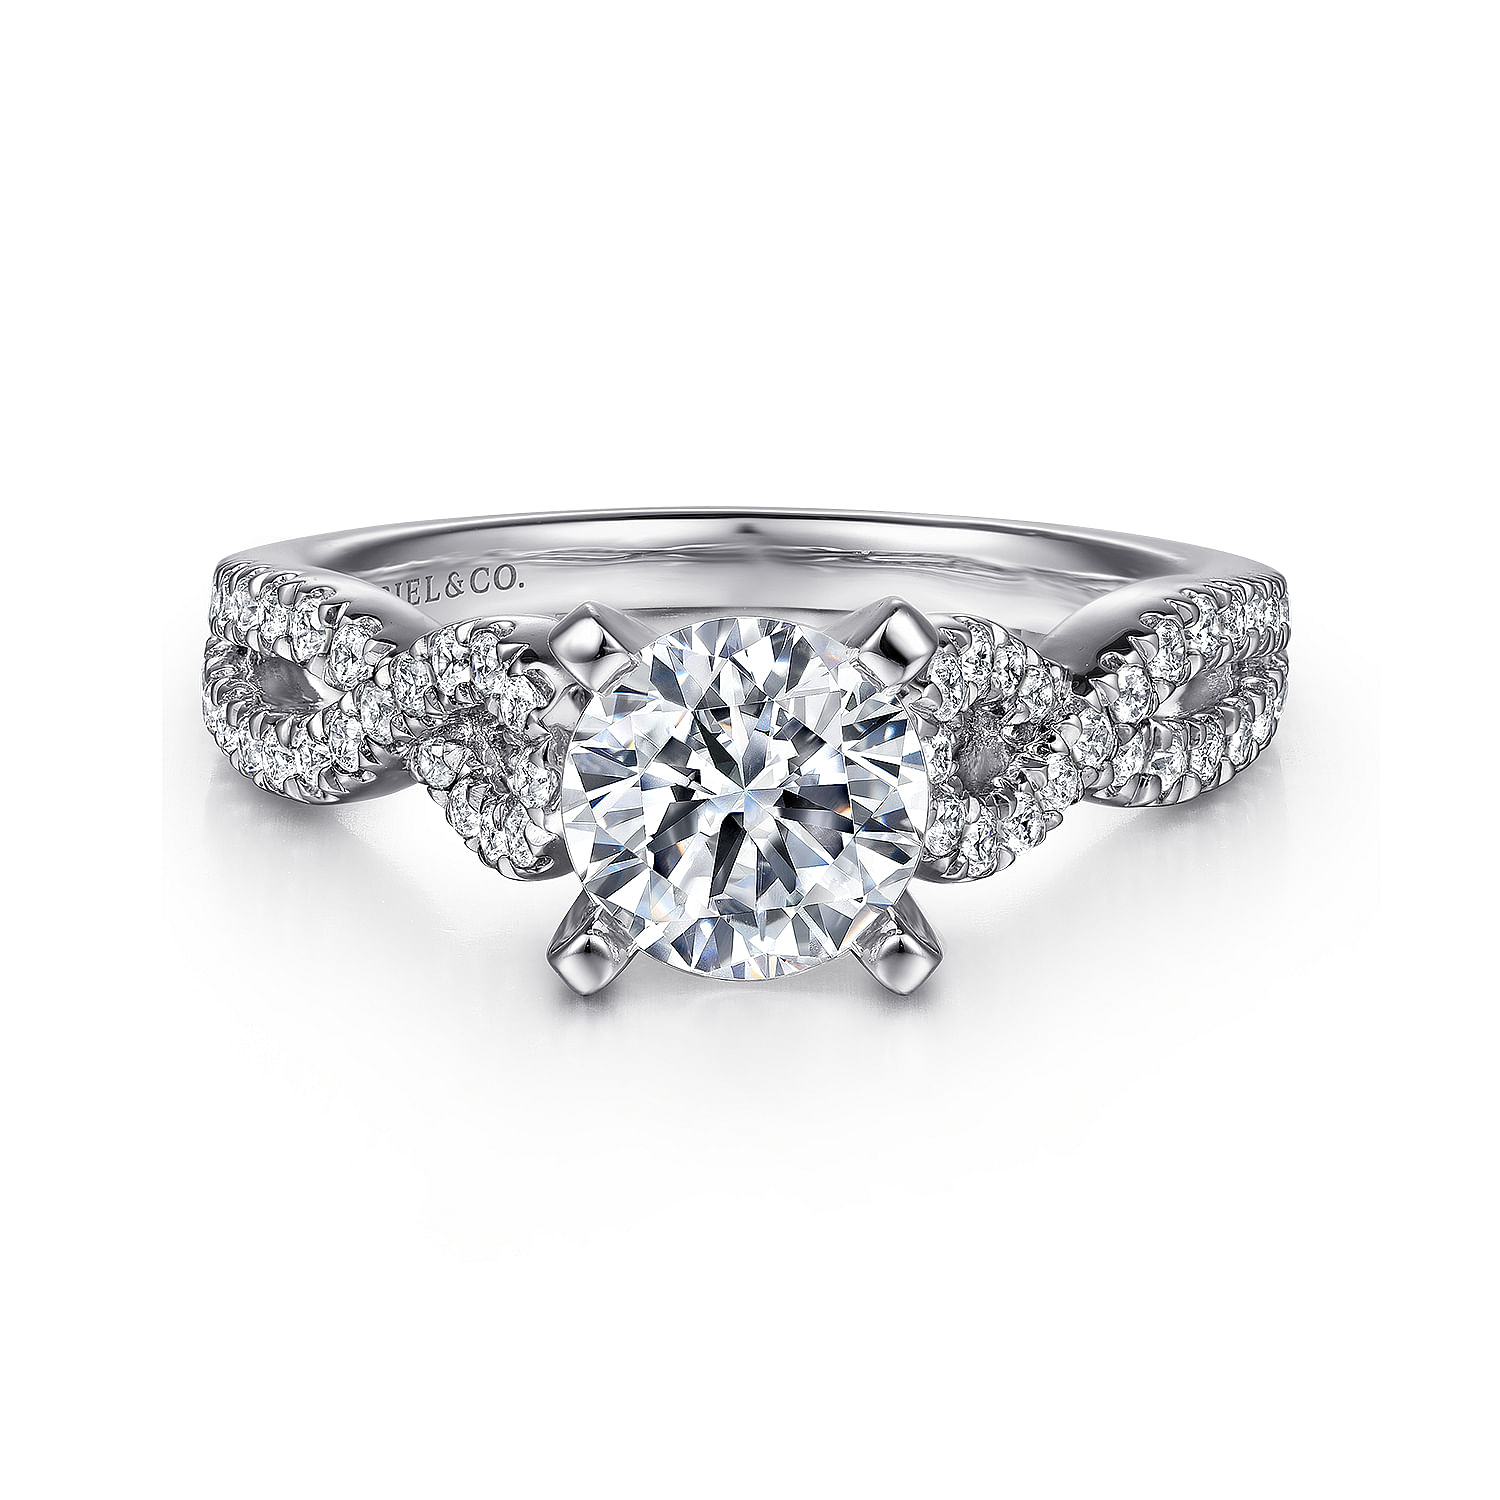 Kayla - 14K White Gold Round Twisted Diamond Engagement Ring